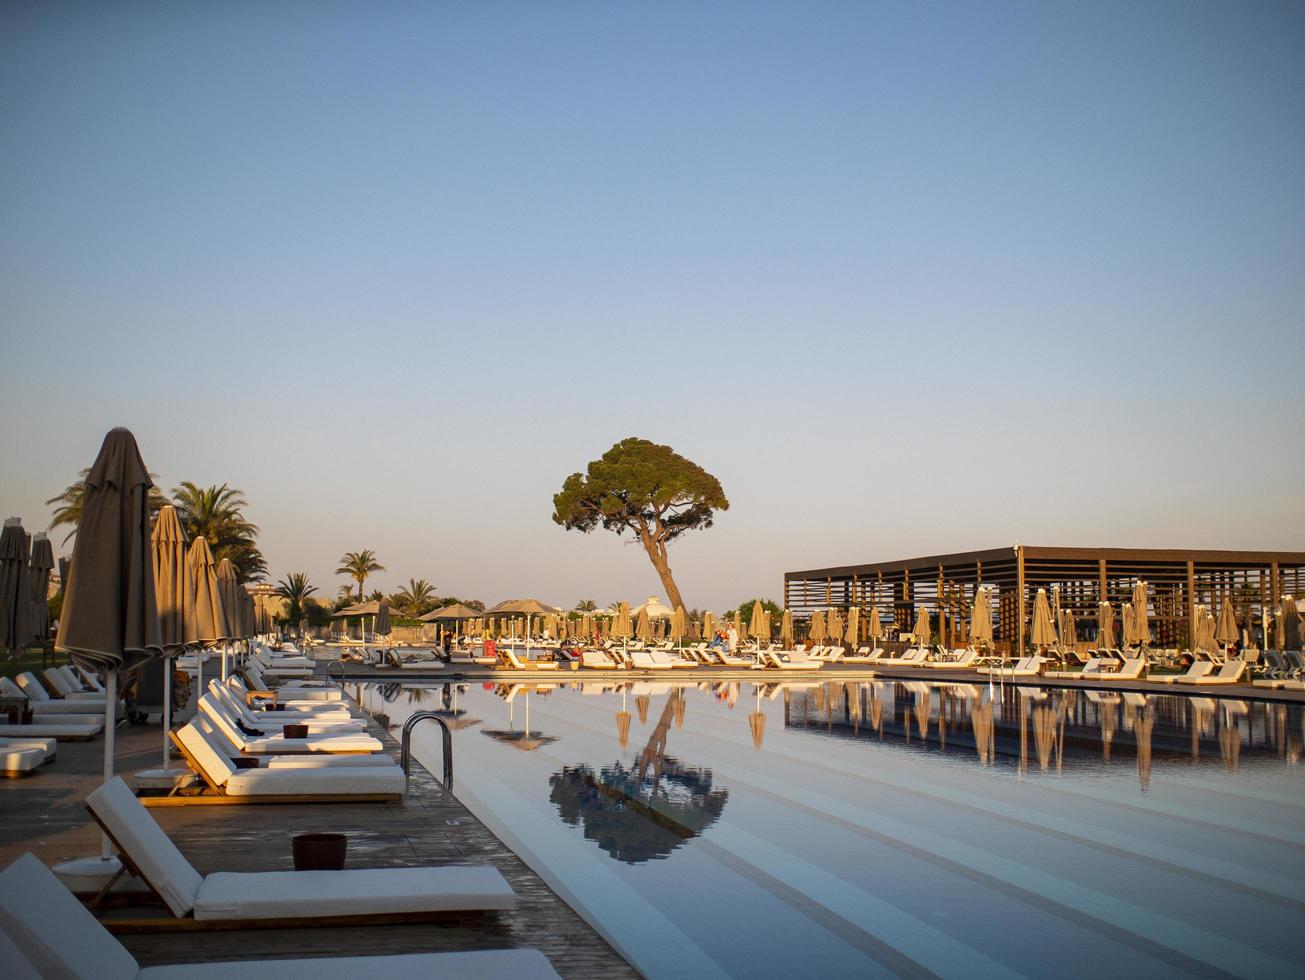 piscine dans un complexe de luxe ou un hôtel donnant sur un grand arbre et la plage sous un ciel bleu photo